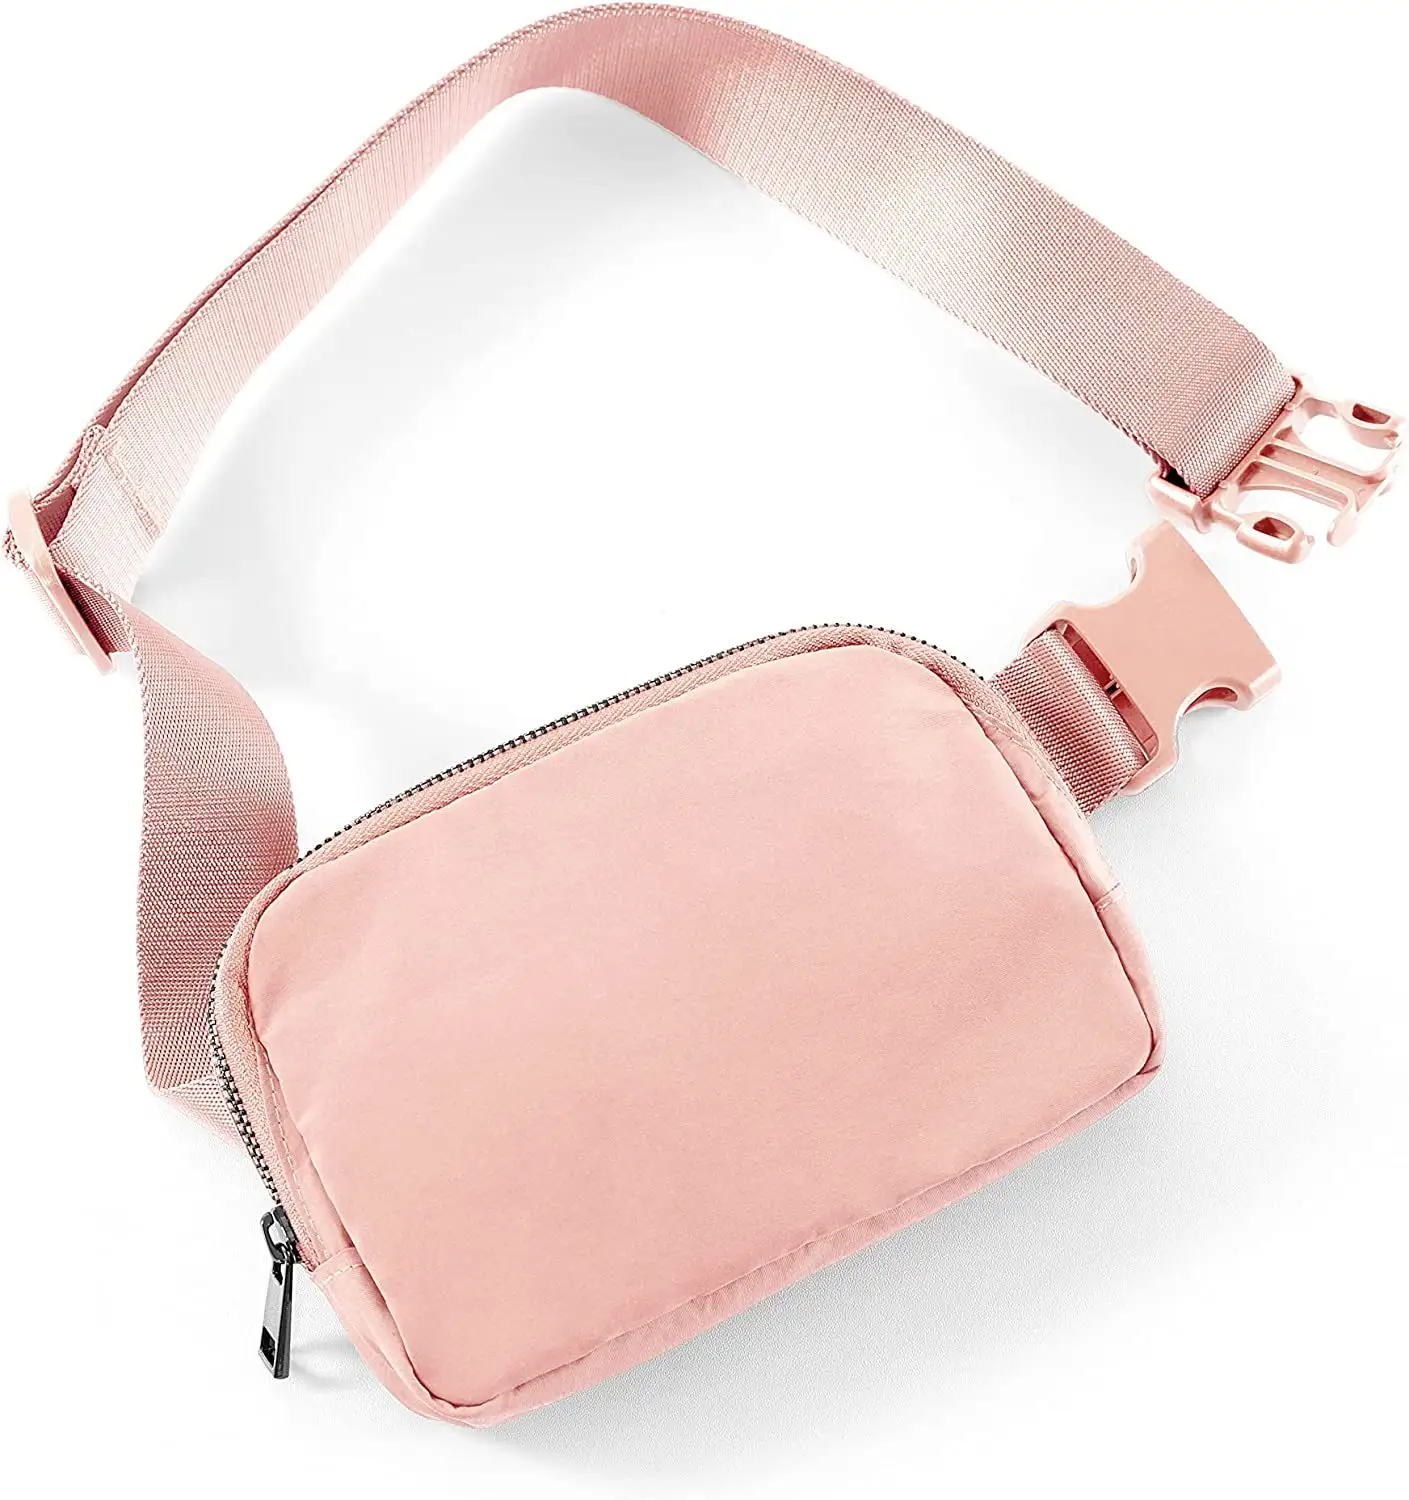 New Design Large Capacity Nylon Running Belt Waist Bags Travel Sport Fanny Pack Crossbody Bag